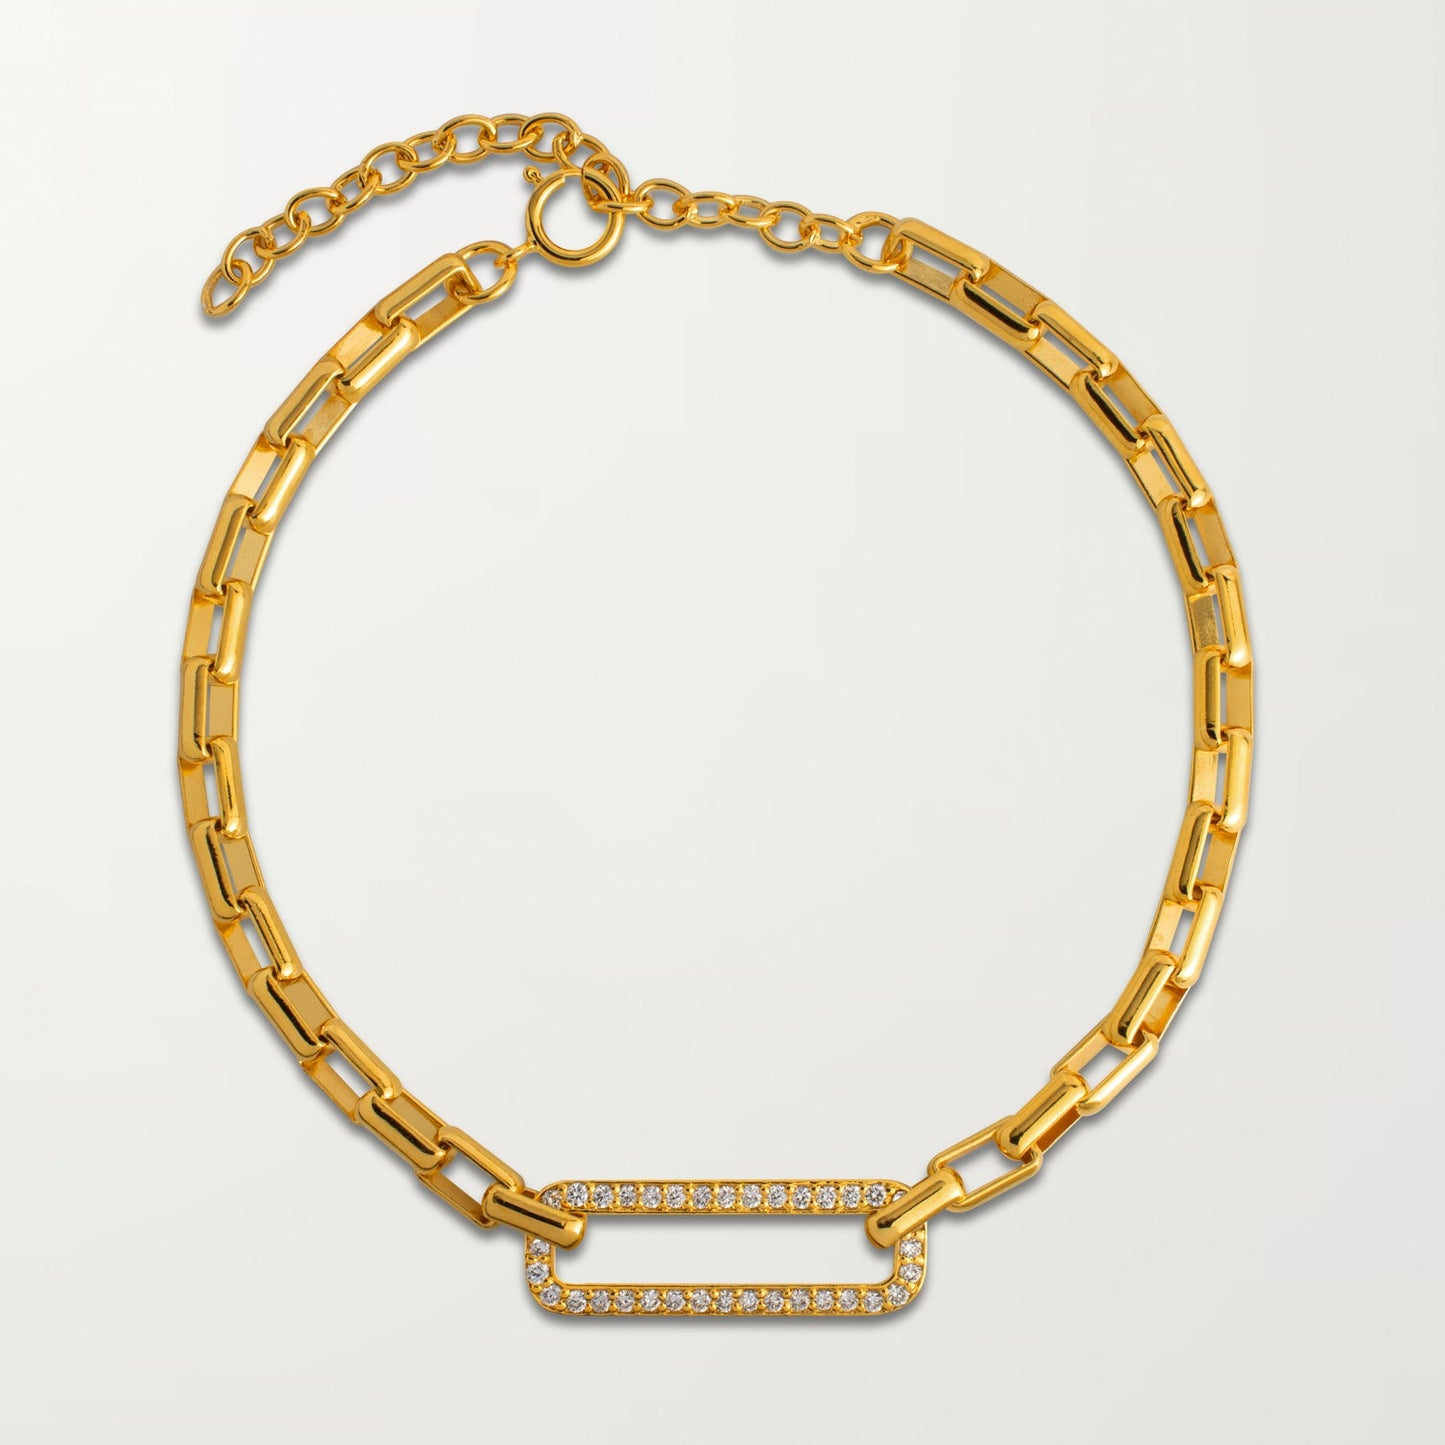 The Granada Bracelet